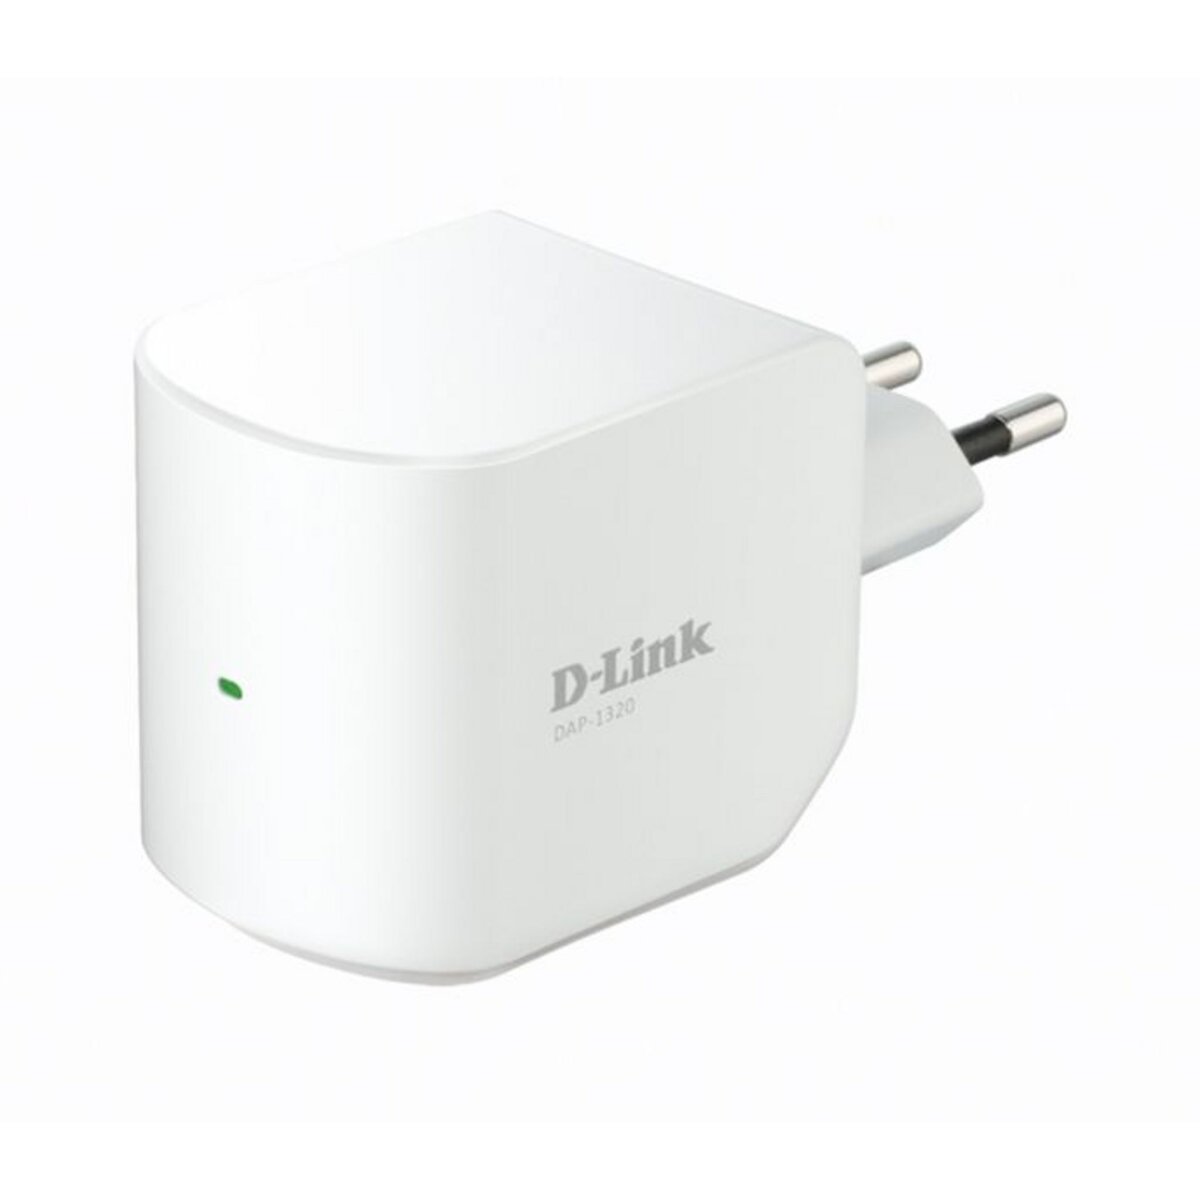 D-LINK Point d acces sans fil DAP-1320